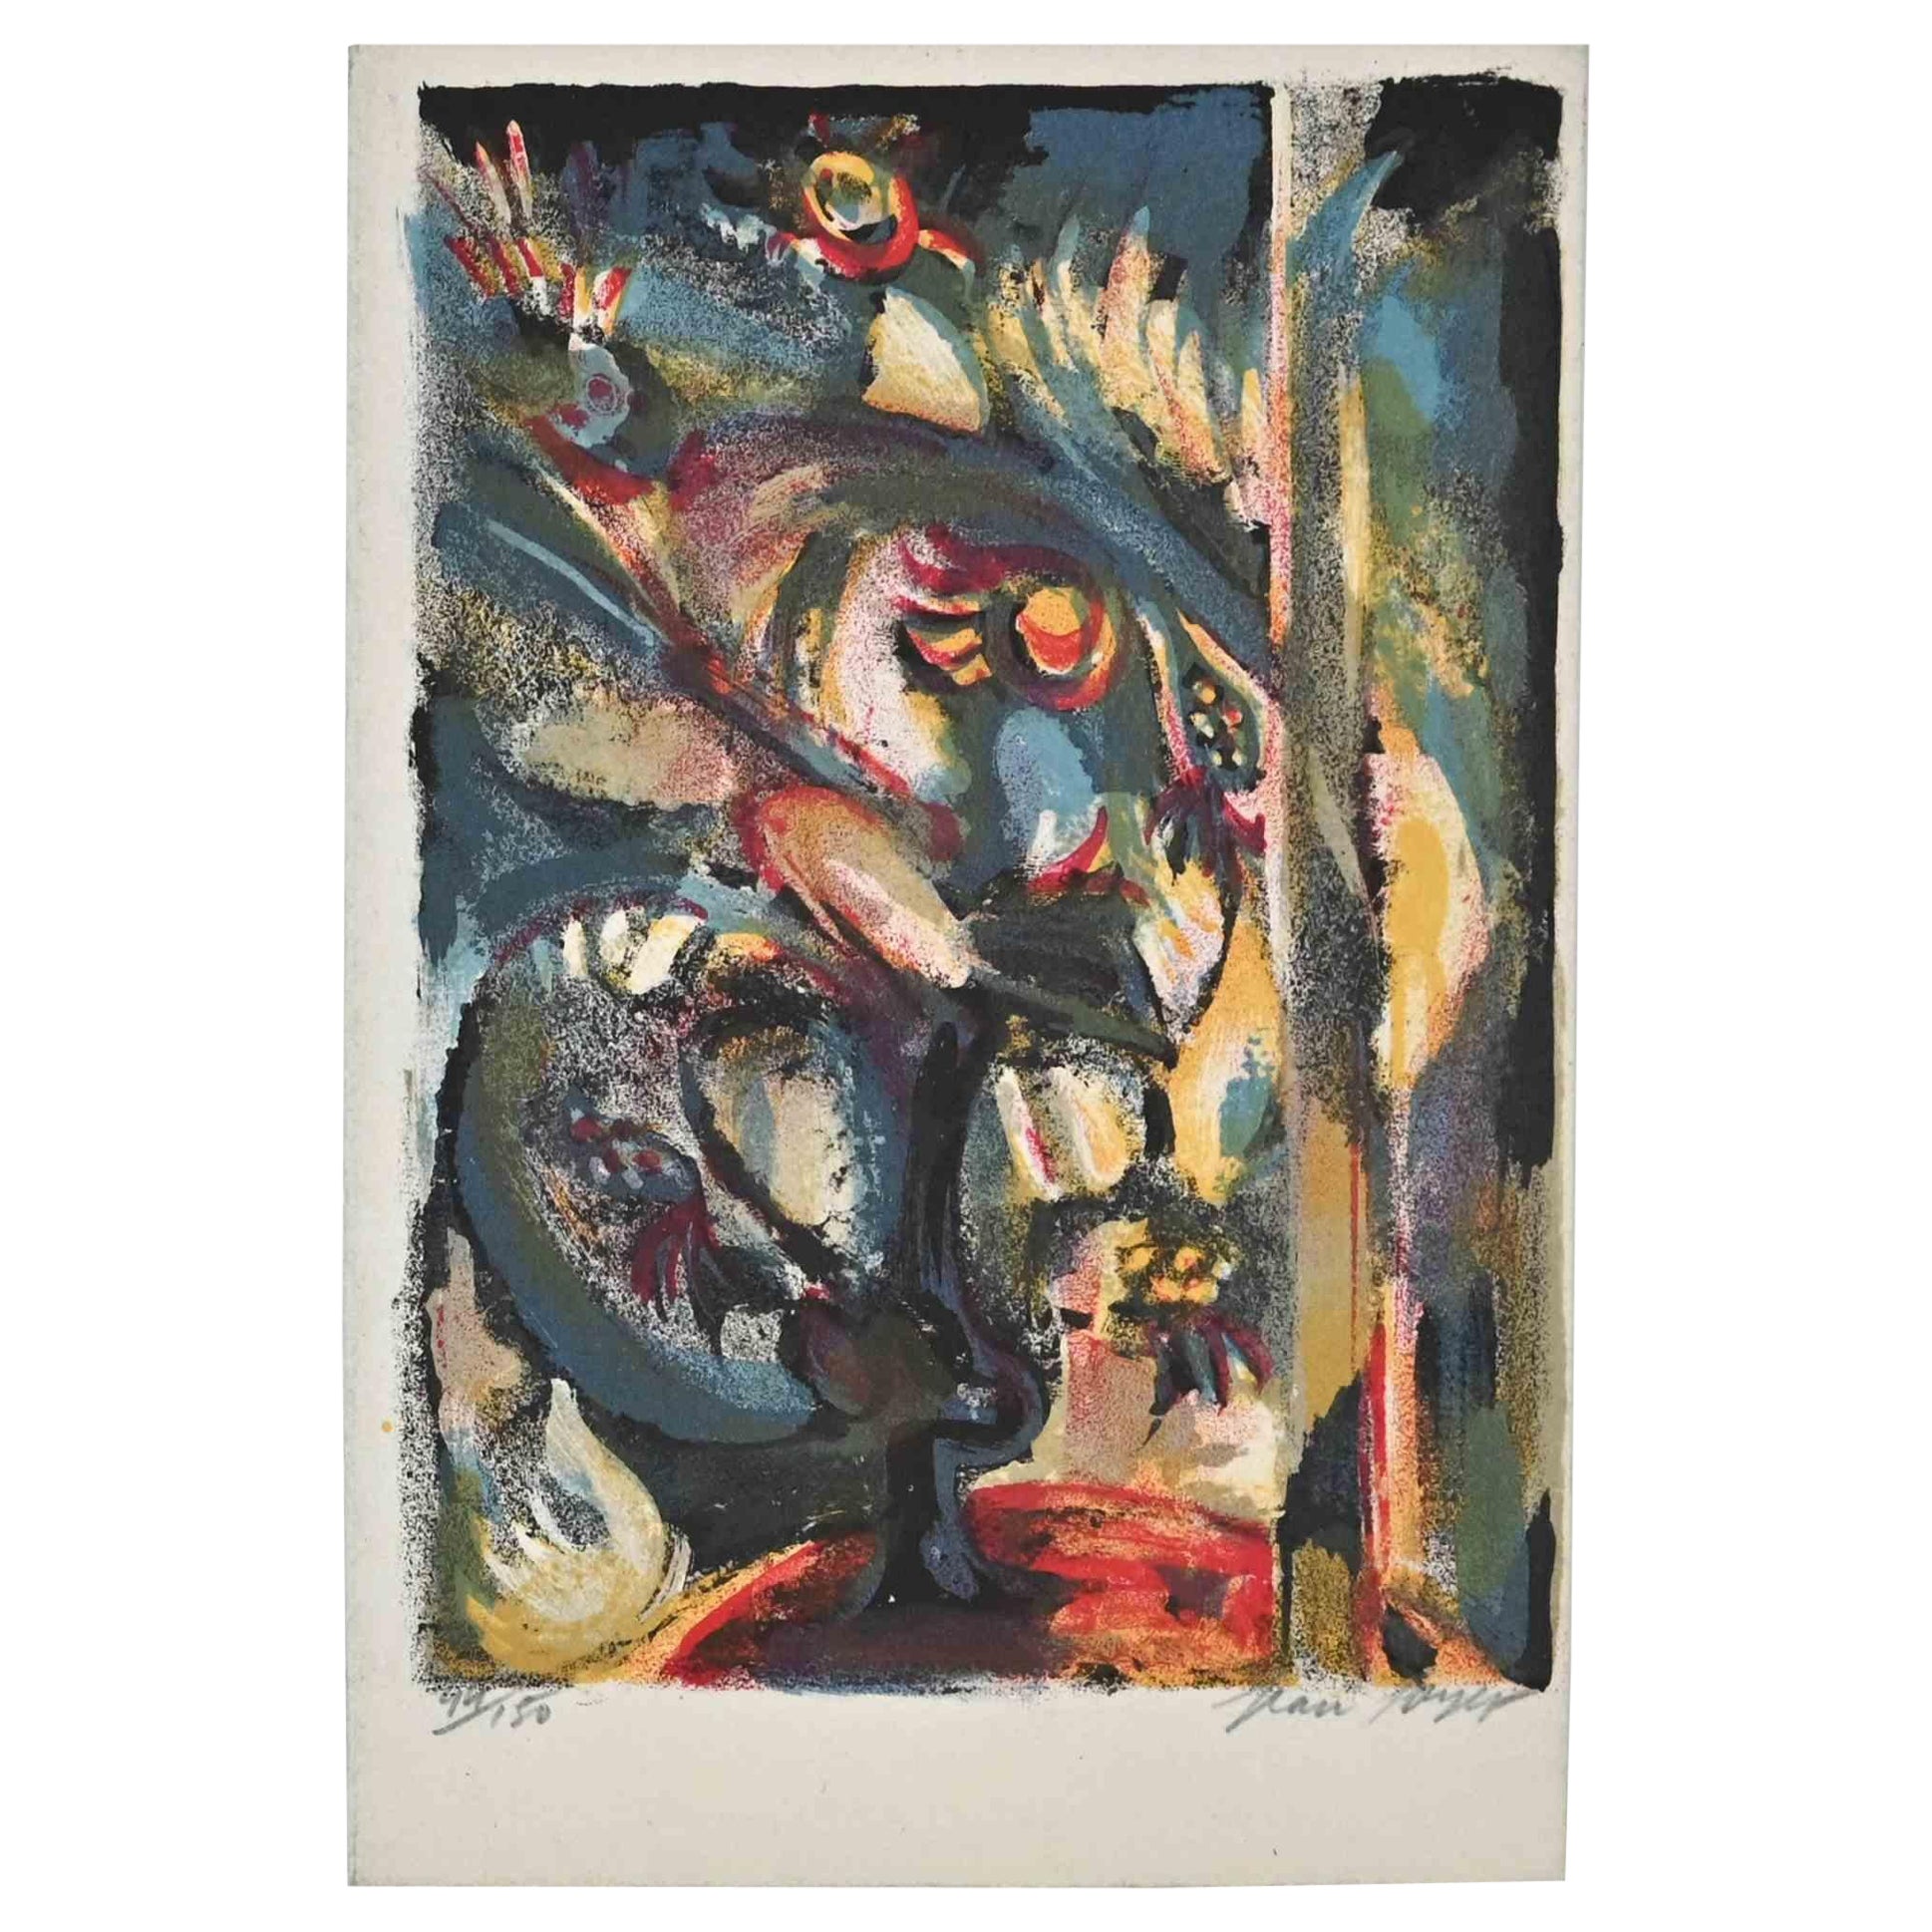 Abstrakte Komposition ist eine Lithographie auf Papier von Jean Joyet (21. Juni 1919 - 14. April 1994), einem französischen Maler der 1950er Jahre.

Handsigniert auf der Unterseite.

Nummerierte Auflage von 99/150 Exemplaren.

Enthält ein Greem